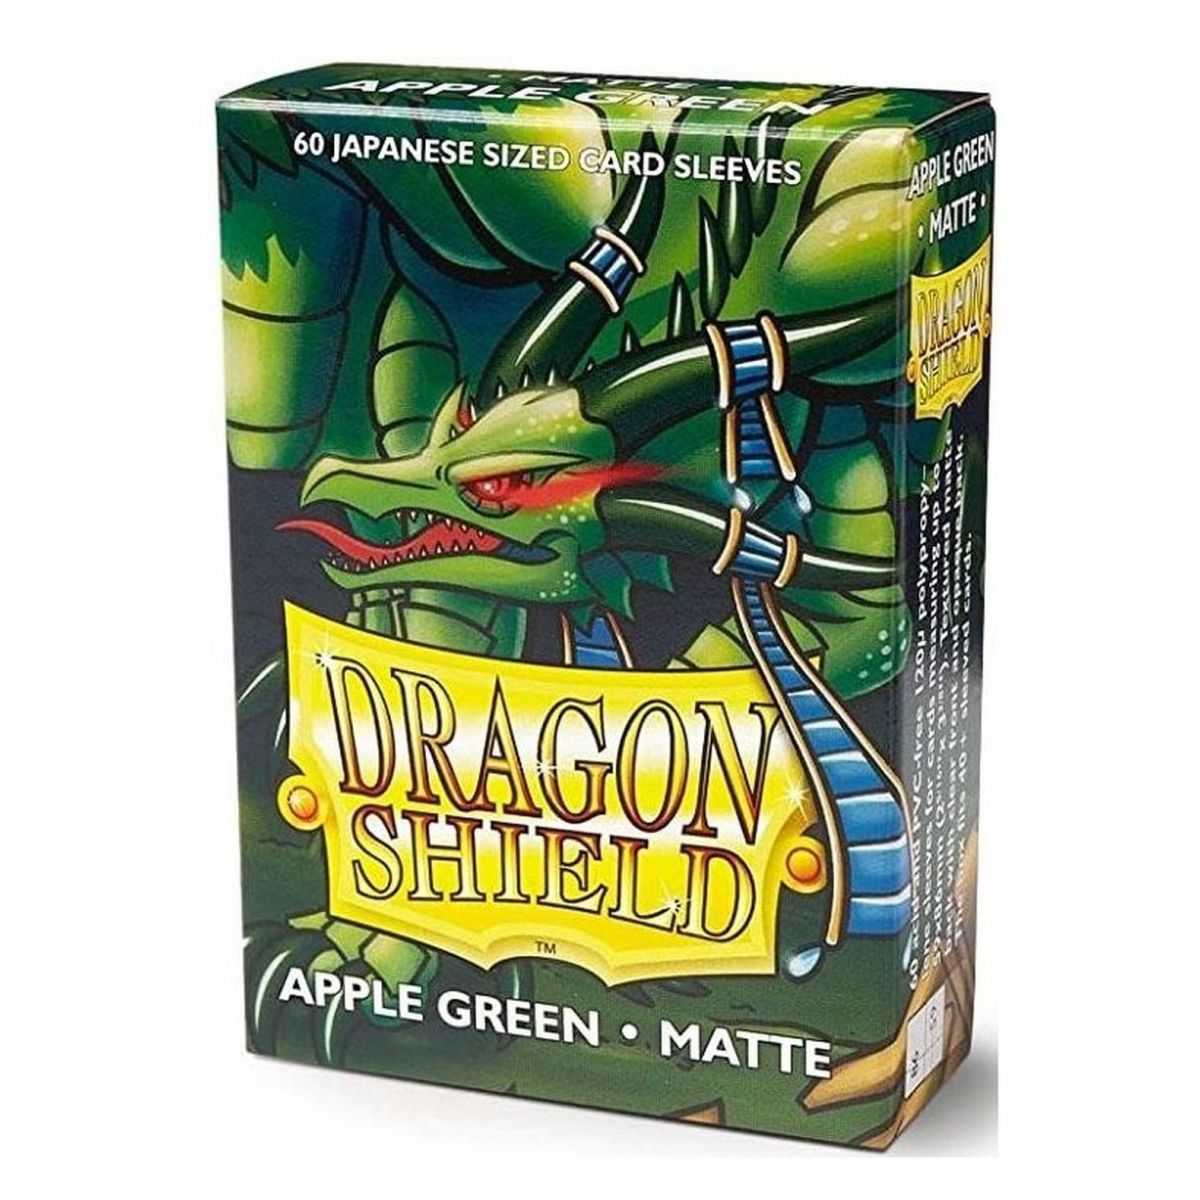 Item Dragon Shield Kleine Hüllen – Mattapfelgrün (60)